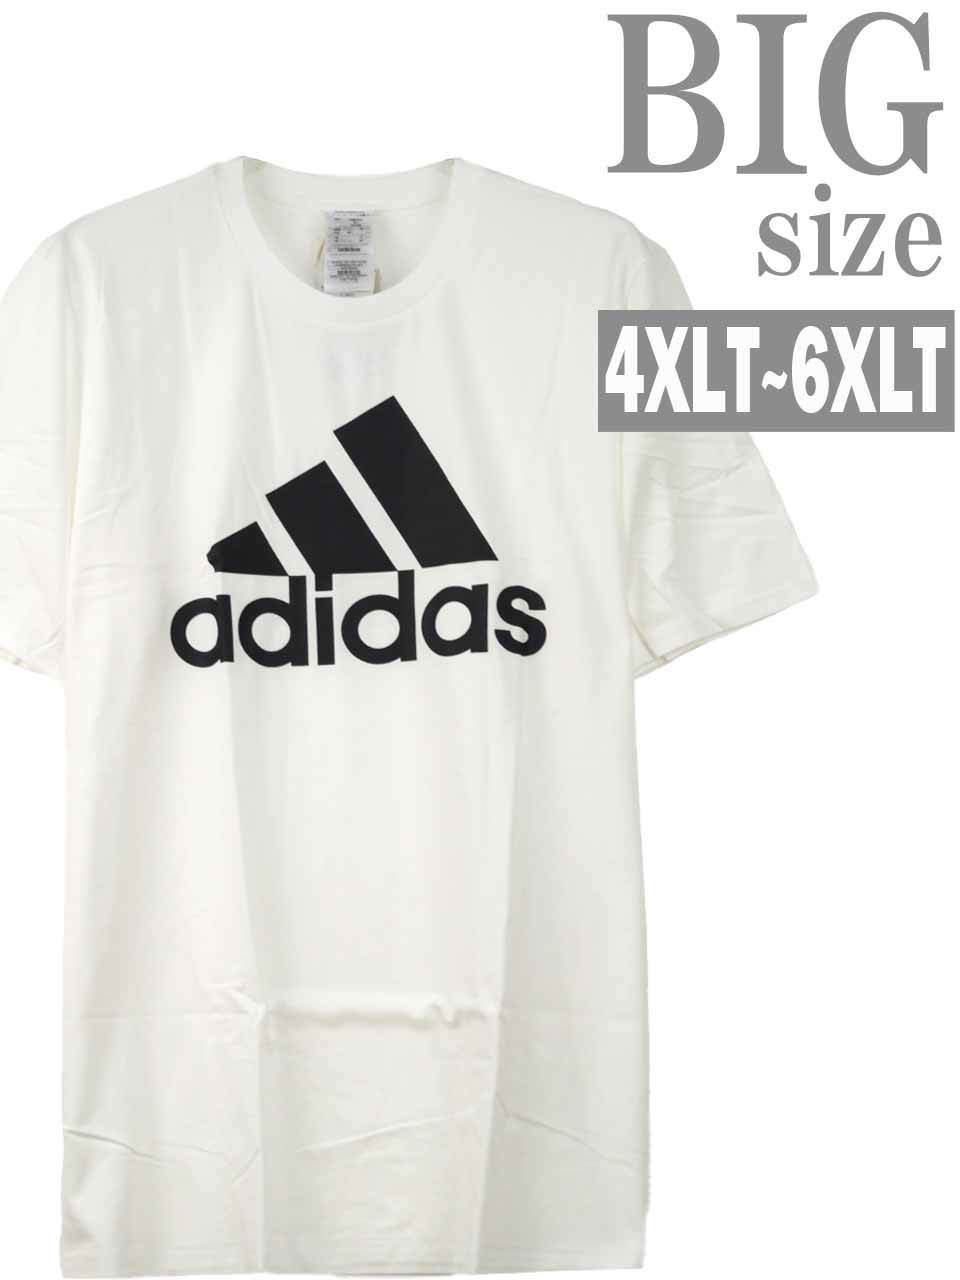 Tシャツ 大きいサイズ メンズ ロンT ロング丈 ロゴプリント adidas M ESS BL キン...